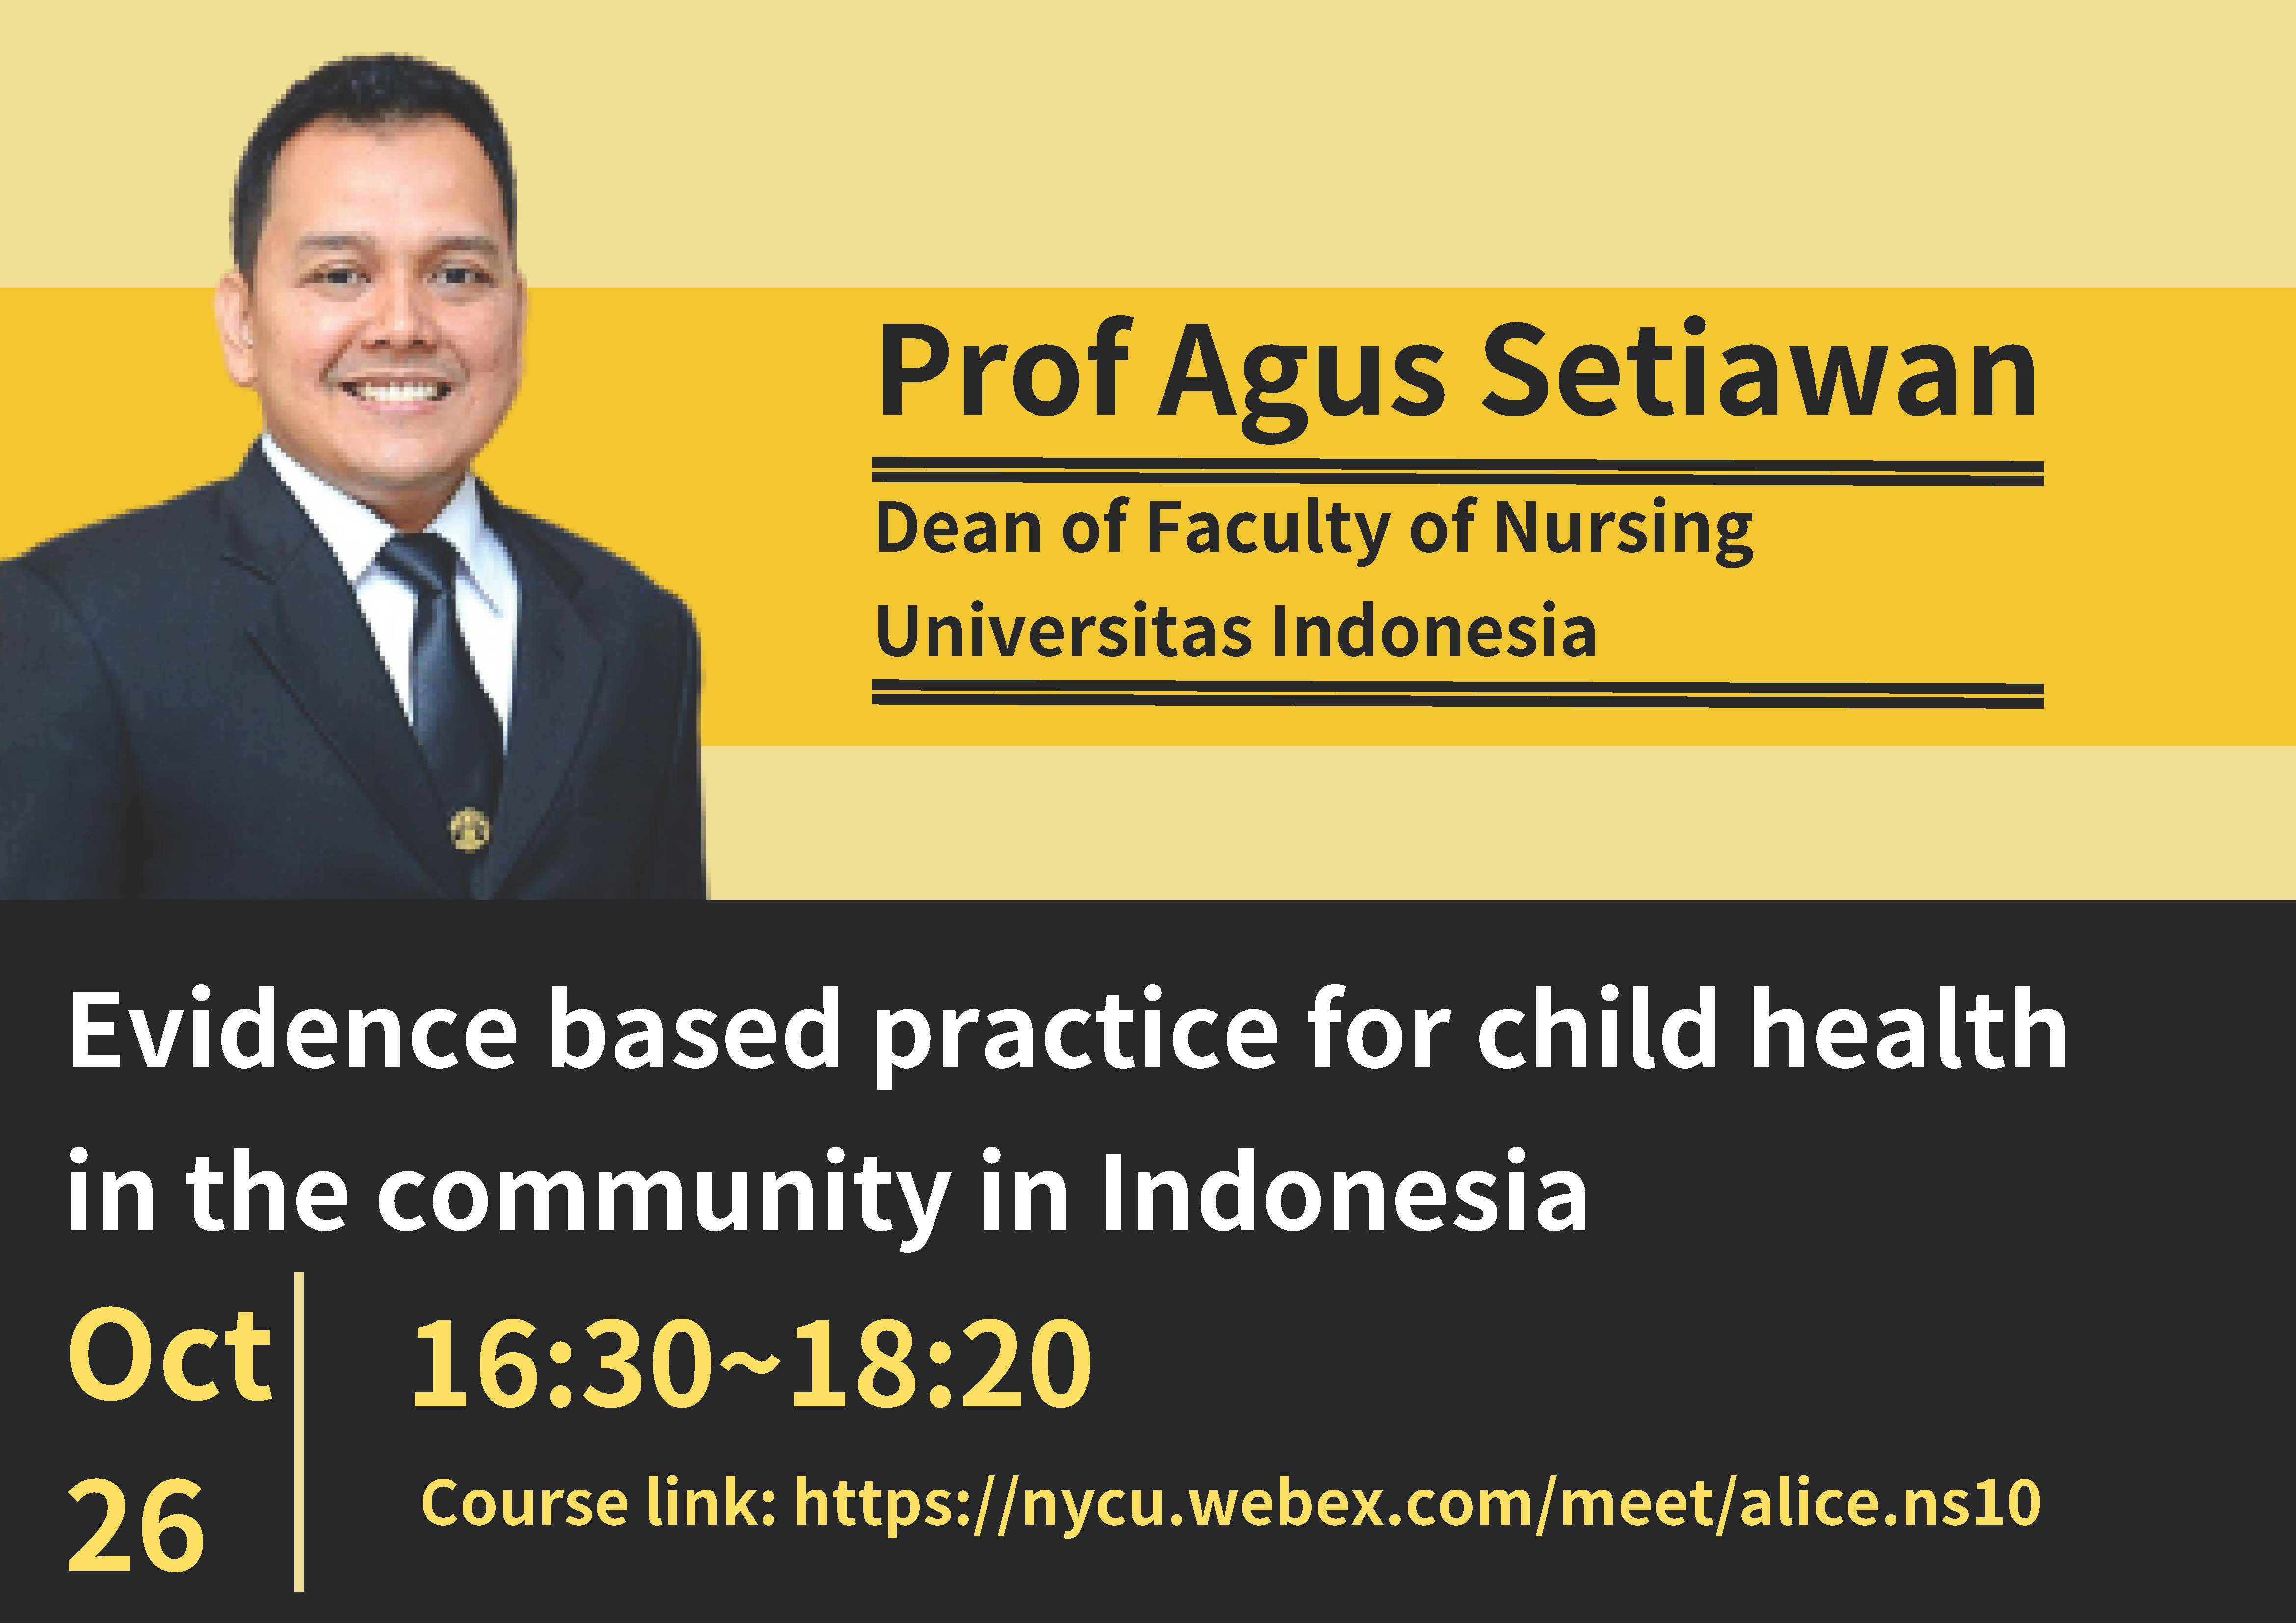 “護理角色於社會心理以及社會福祉的照護”-邀請 🇮🇩國立印尼大學 University of Indonesia 護理學院院長 Prof Agus Setiawan(線上英語課程)